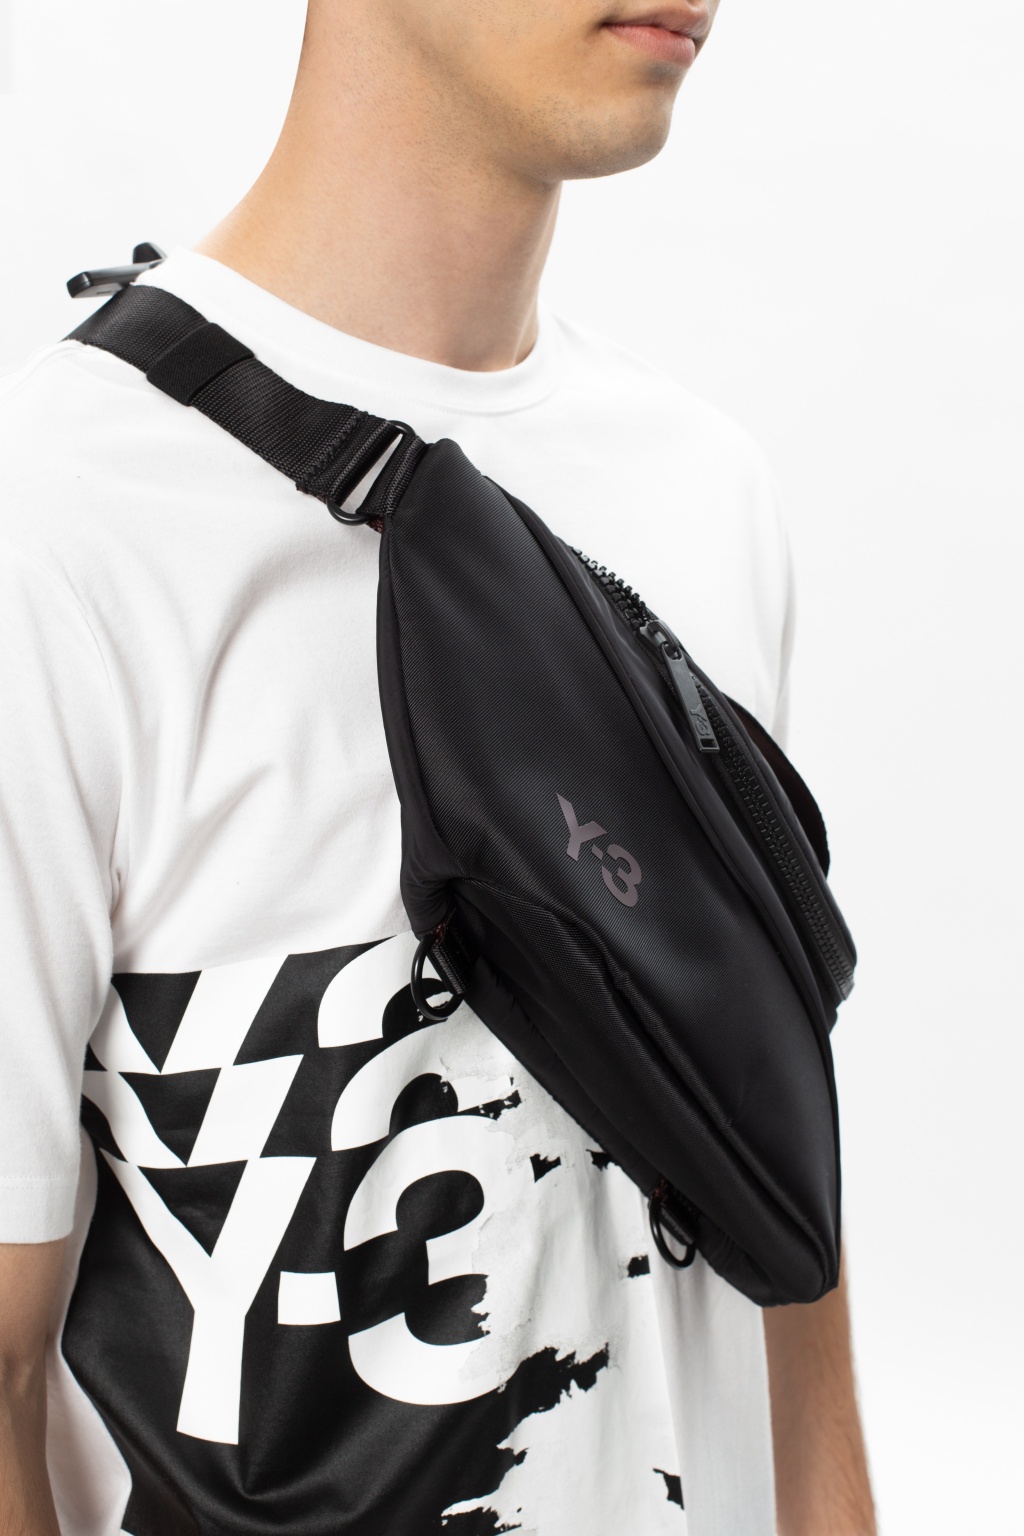 IetpShops - 3 Yohji Yamamoto Branded belt bag - Men's Bags